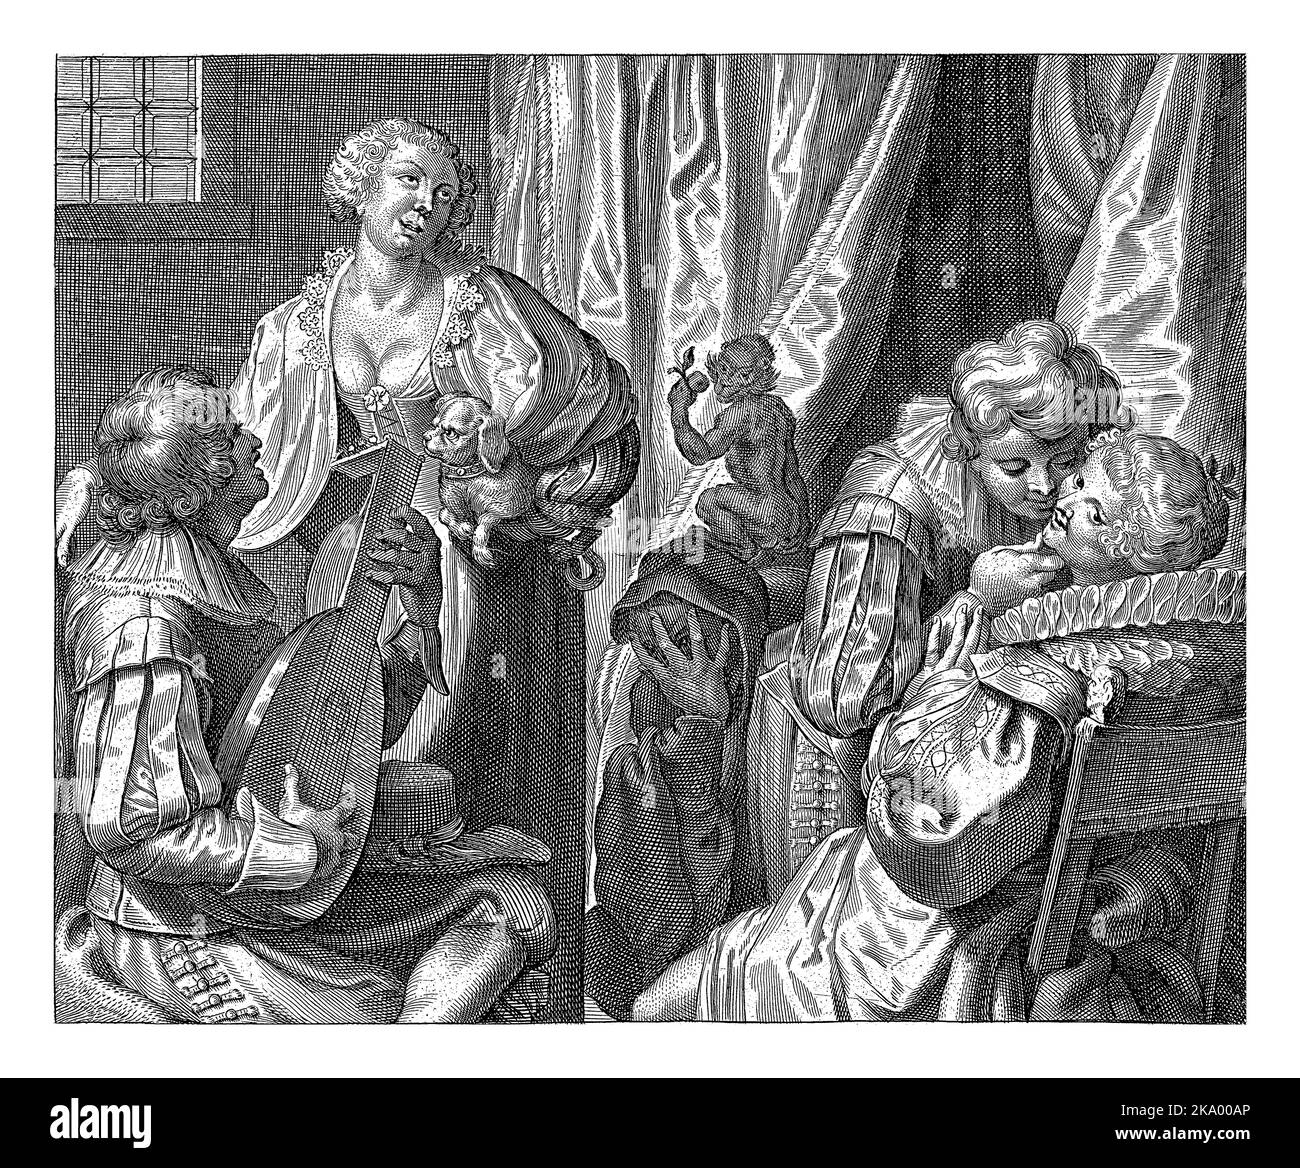 Die fünf Sinne, Cornelis Galle (II), nach Johann Liss, c. 1610 - c. 1678 allegorische Darstellung der fünf Sinne. Ein Mann spielt Laute und Wom Stockfoto